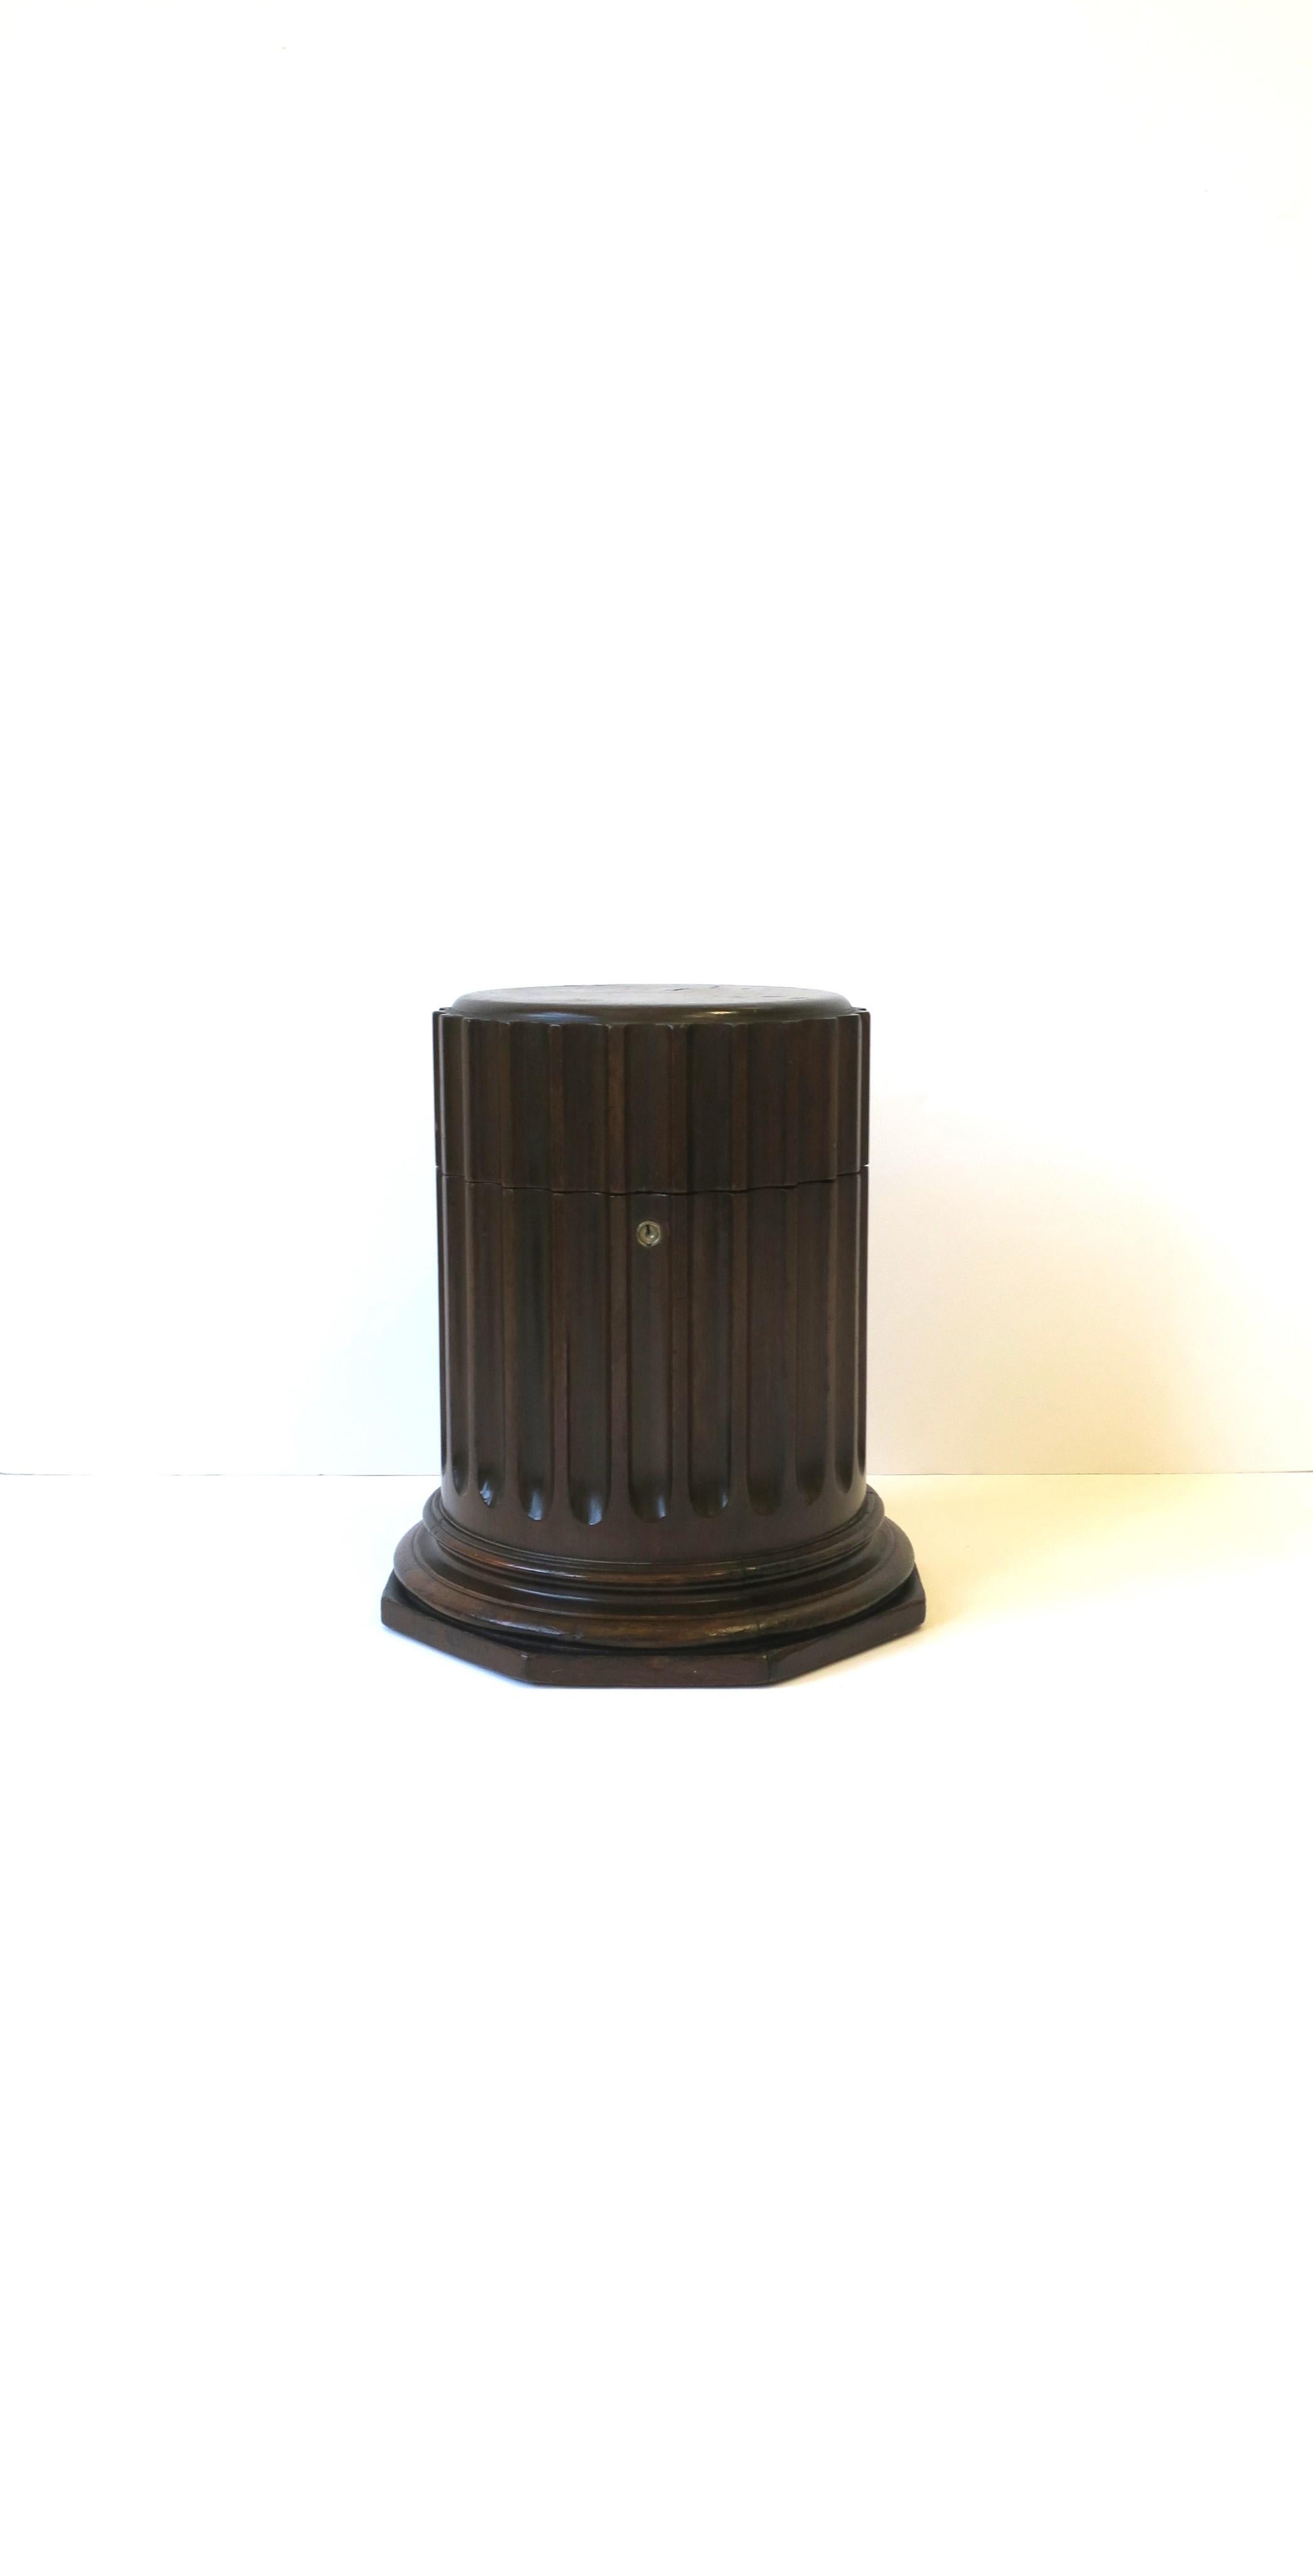 Magnifique boîte à colonnes de style néoclassique, vers le milieu du XXe siècle, États-Unis. La pièce est en bois brun foncé riche, avec une base octogonale et un pilier cannelé. La boîte s'ouvre sur une zone intérieure également de forme octogonale